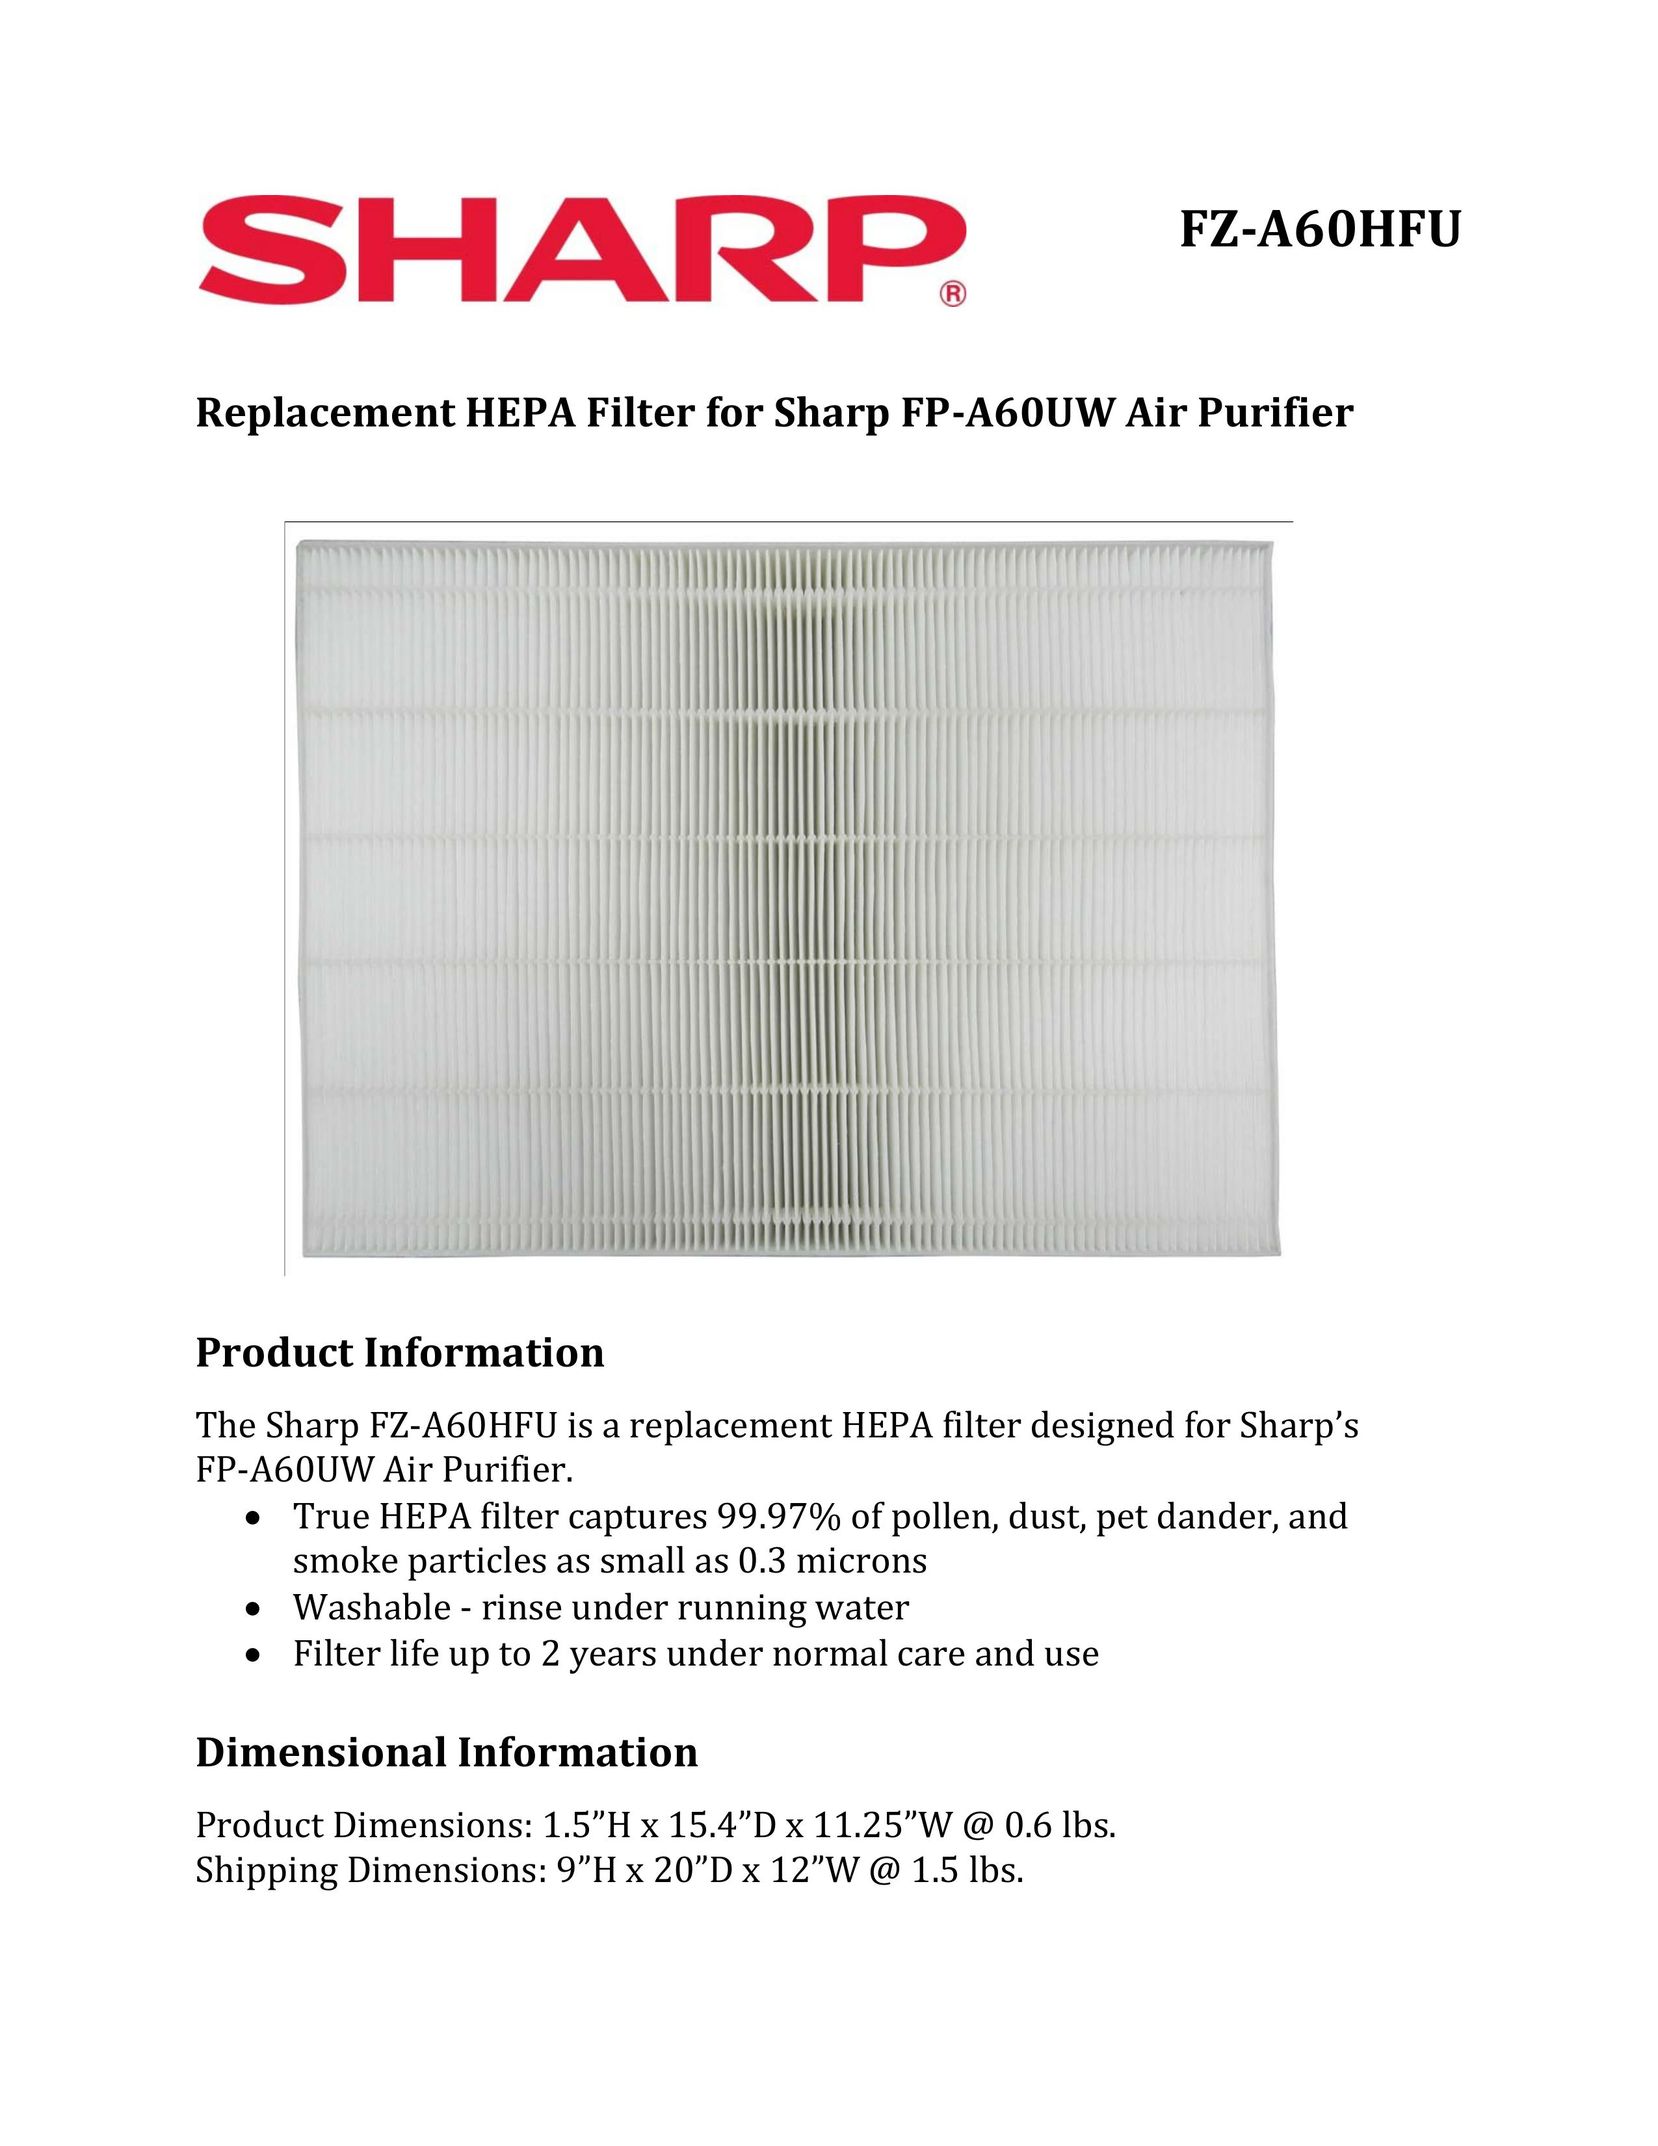 Sharp FZ-A60HFU Air Cleaner User Manual